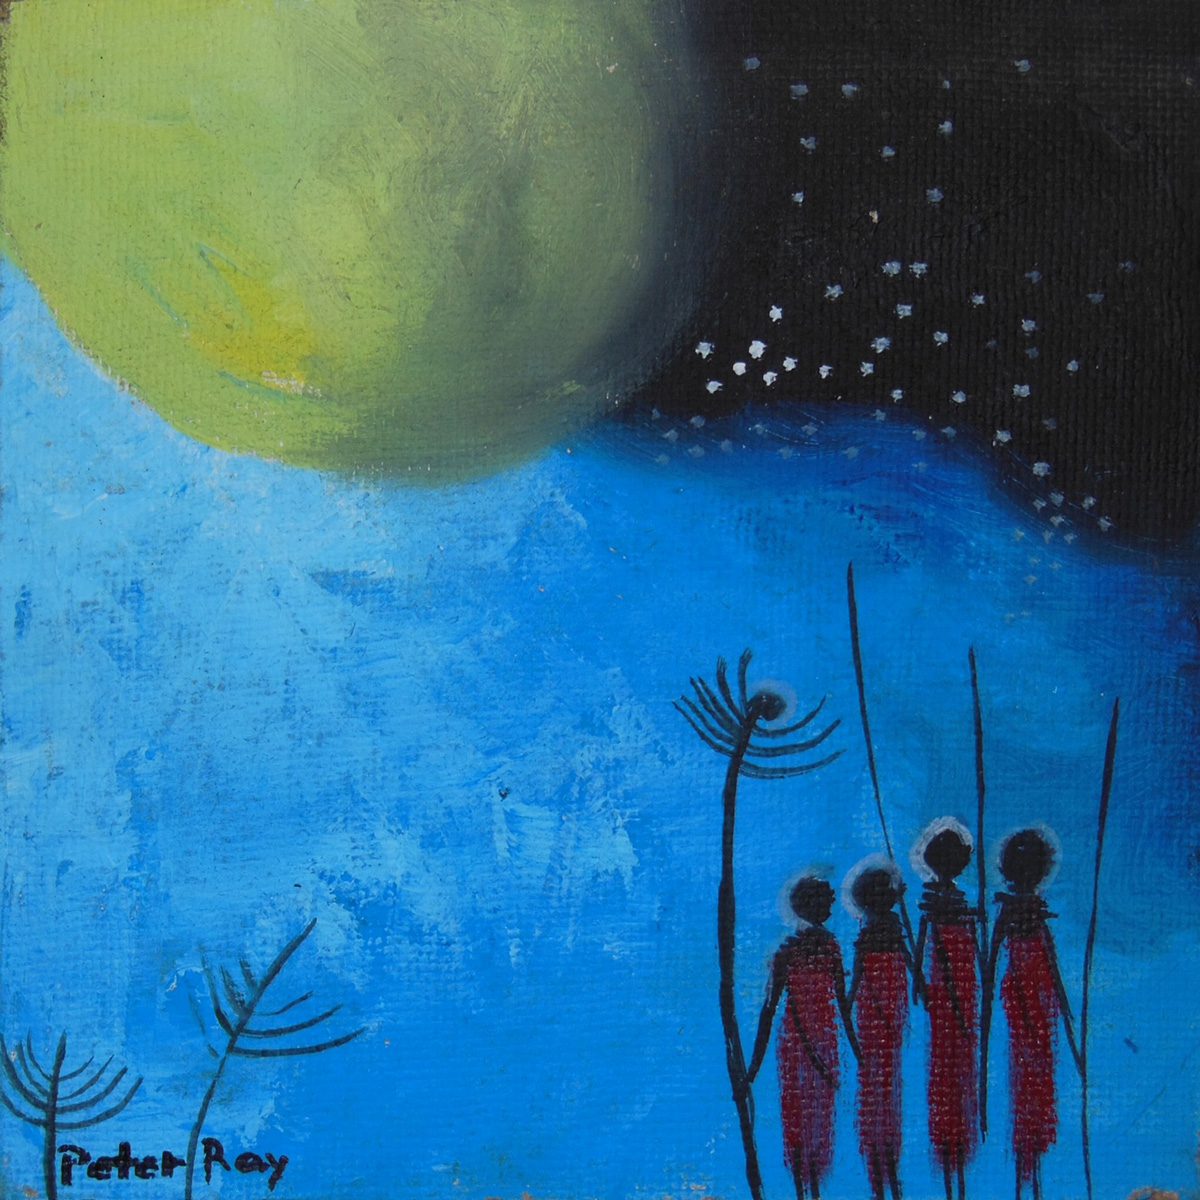 maasai chanting at moon painting by artist peter ray